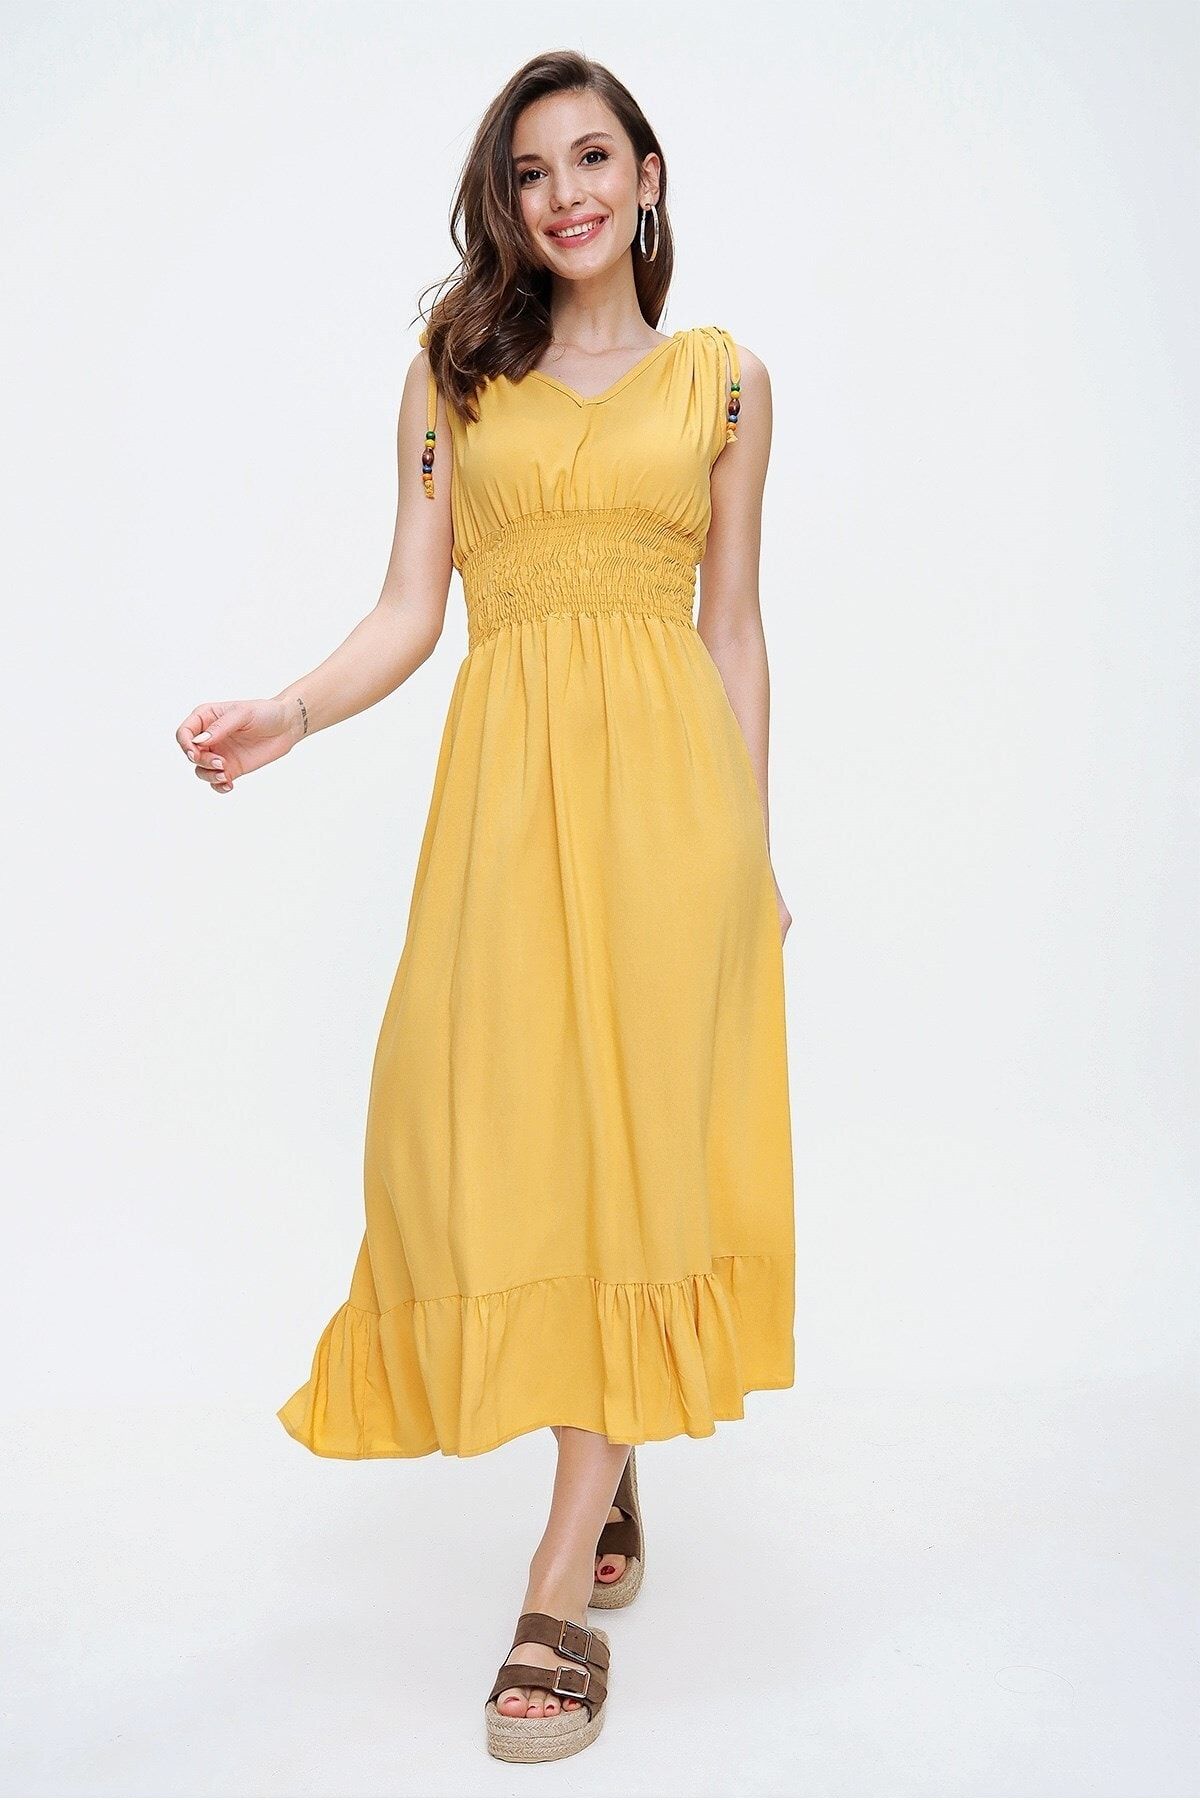 By Saygı Kadın Sarı Beli Lastikli Alt Fırfırlı Boncuklu Elbise S-20Y0250015